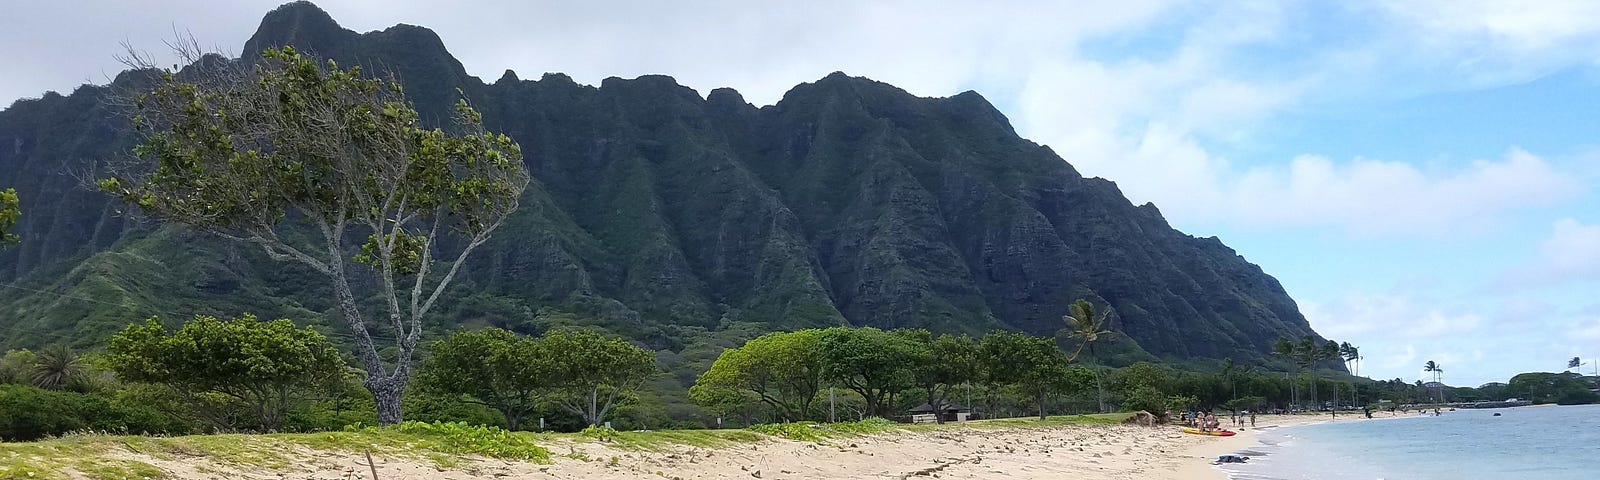 Windward Oahu shoreline dominated by the Ko’olau mountain range.